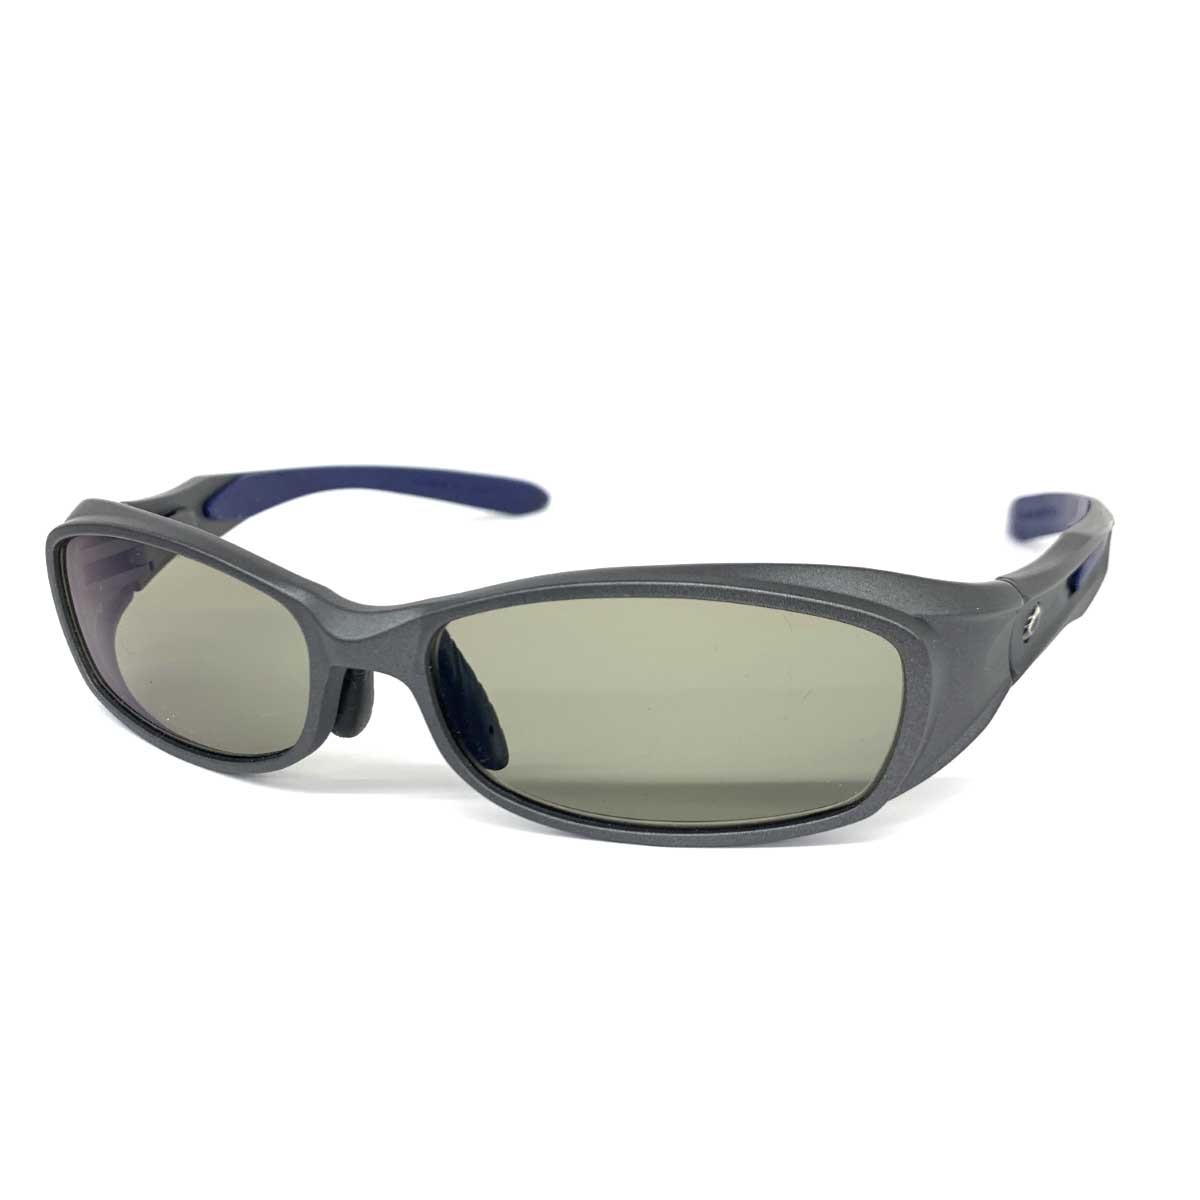 良好◆ZEAL OPTICS ジールオプティクス CAVARO カヴァロ サングラス◆ グレー メンズ 日本製 sunglasses 服飾小物